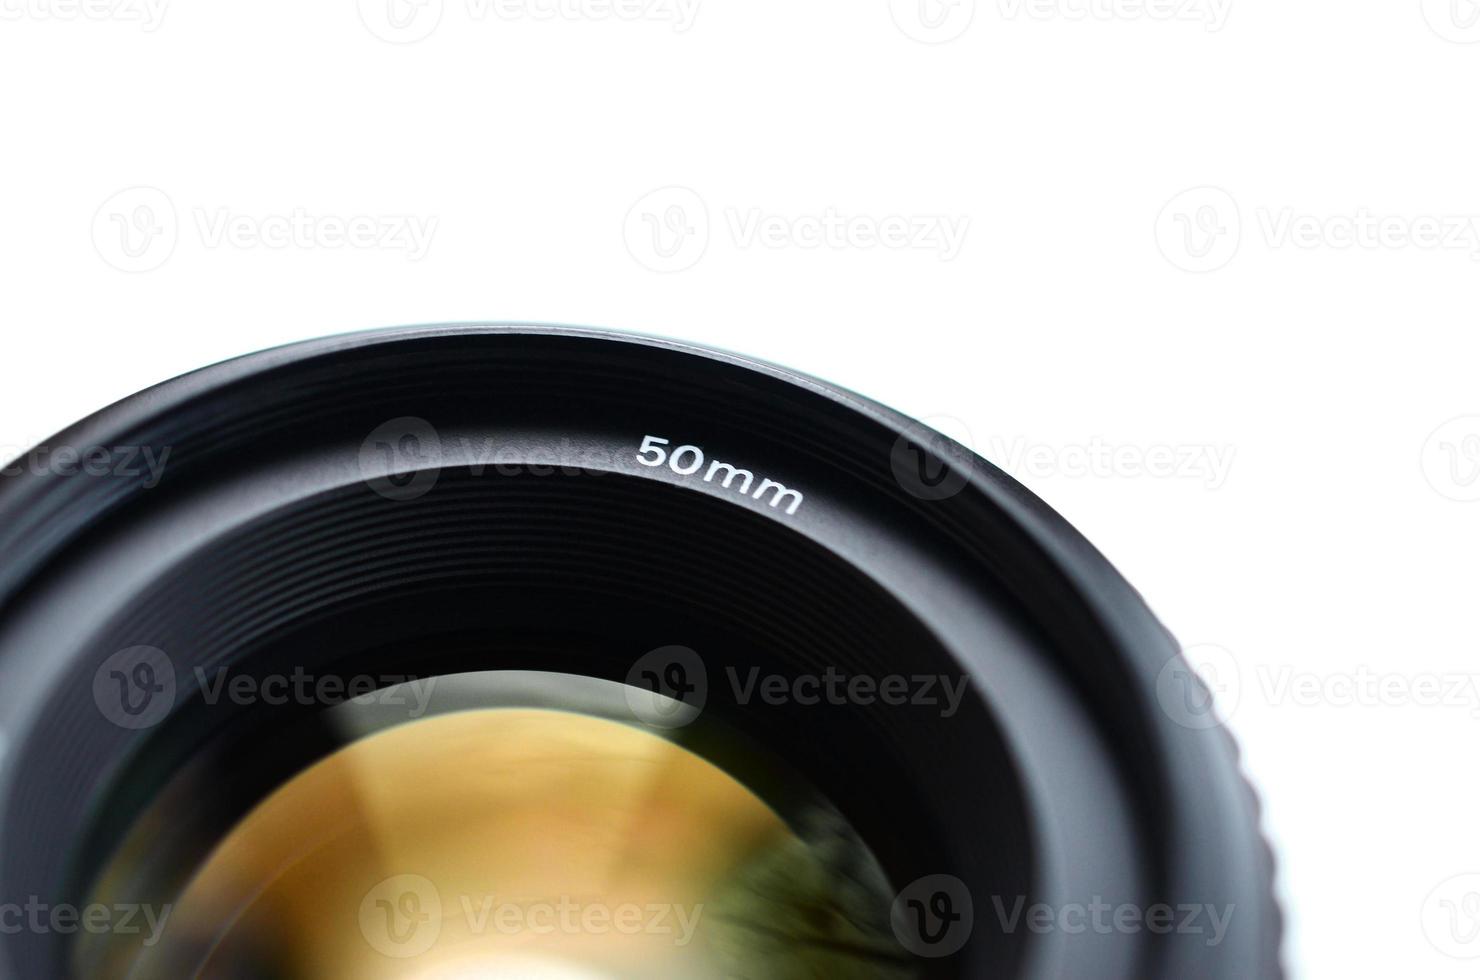 fragment d'un objectif de portrait pour un appareil photo reflex moderne. Une photographie d'un objectif à grande ouverture avec une distance focale de 50 mm isolé sur blanc